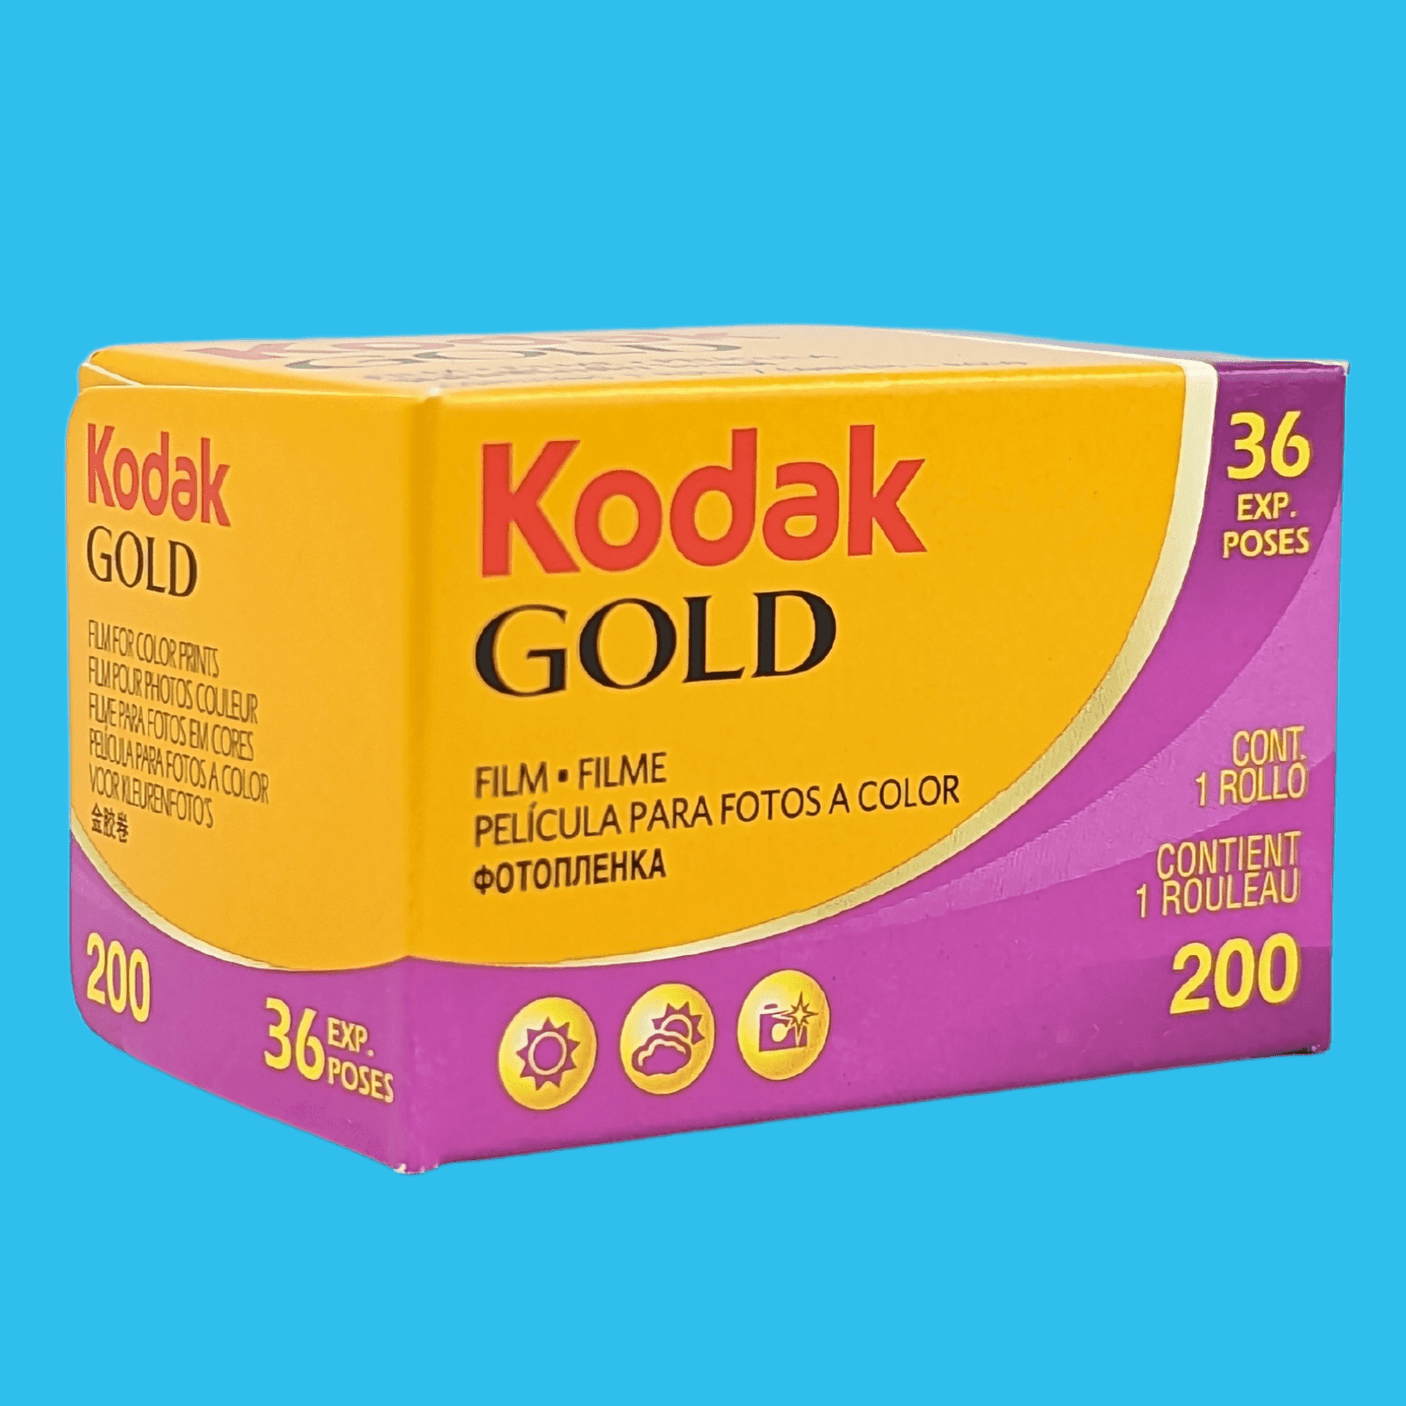 Kodak GOLD 200 36 Exposures 35mm Colour Film